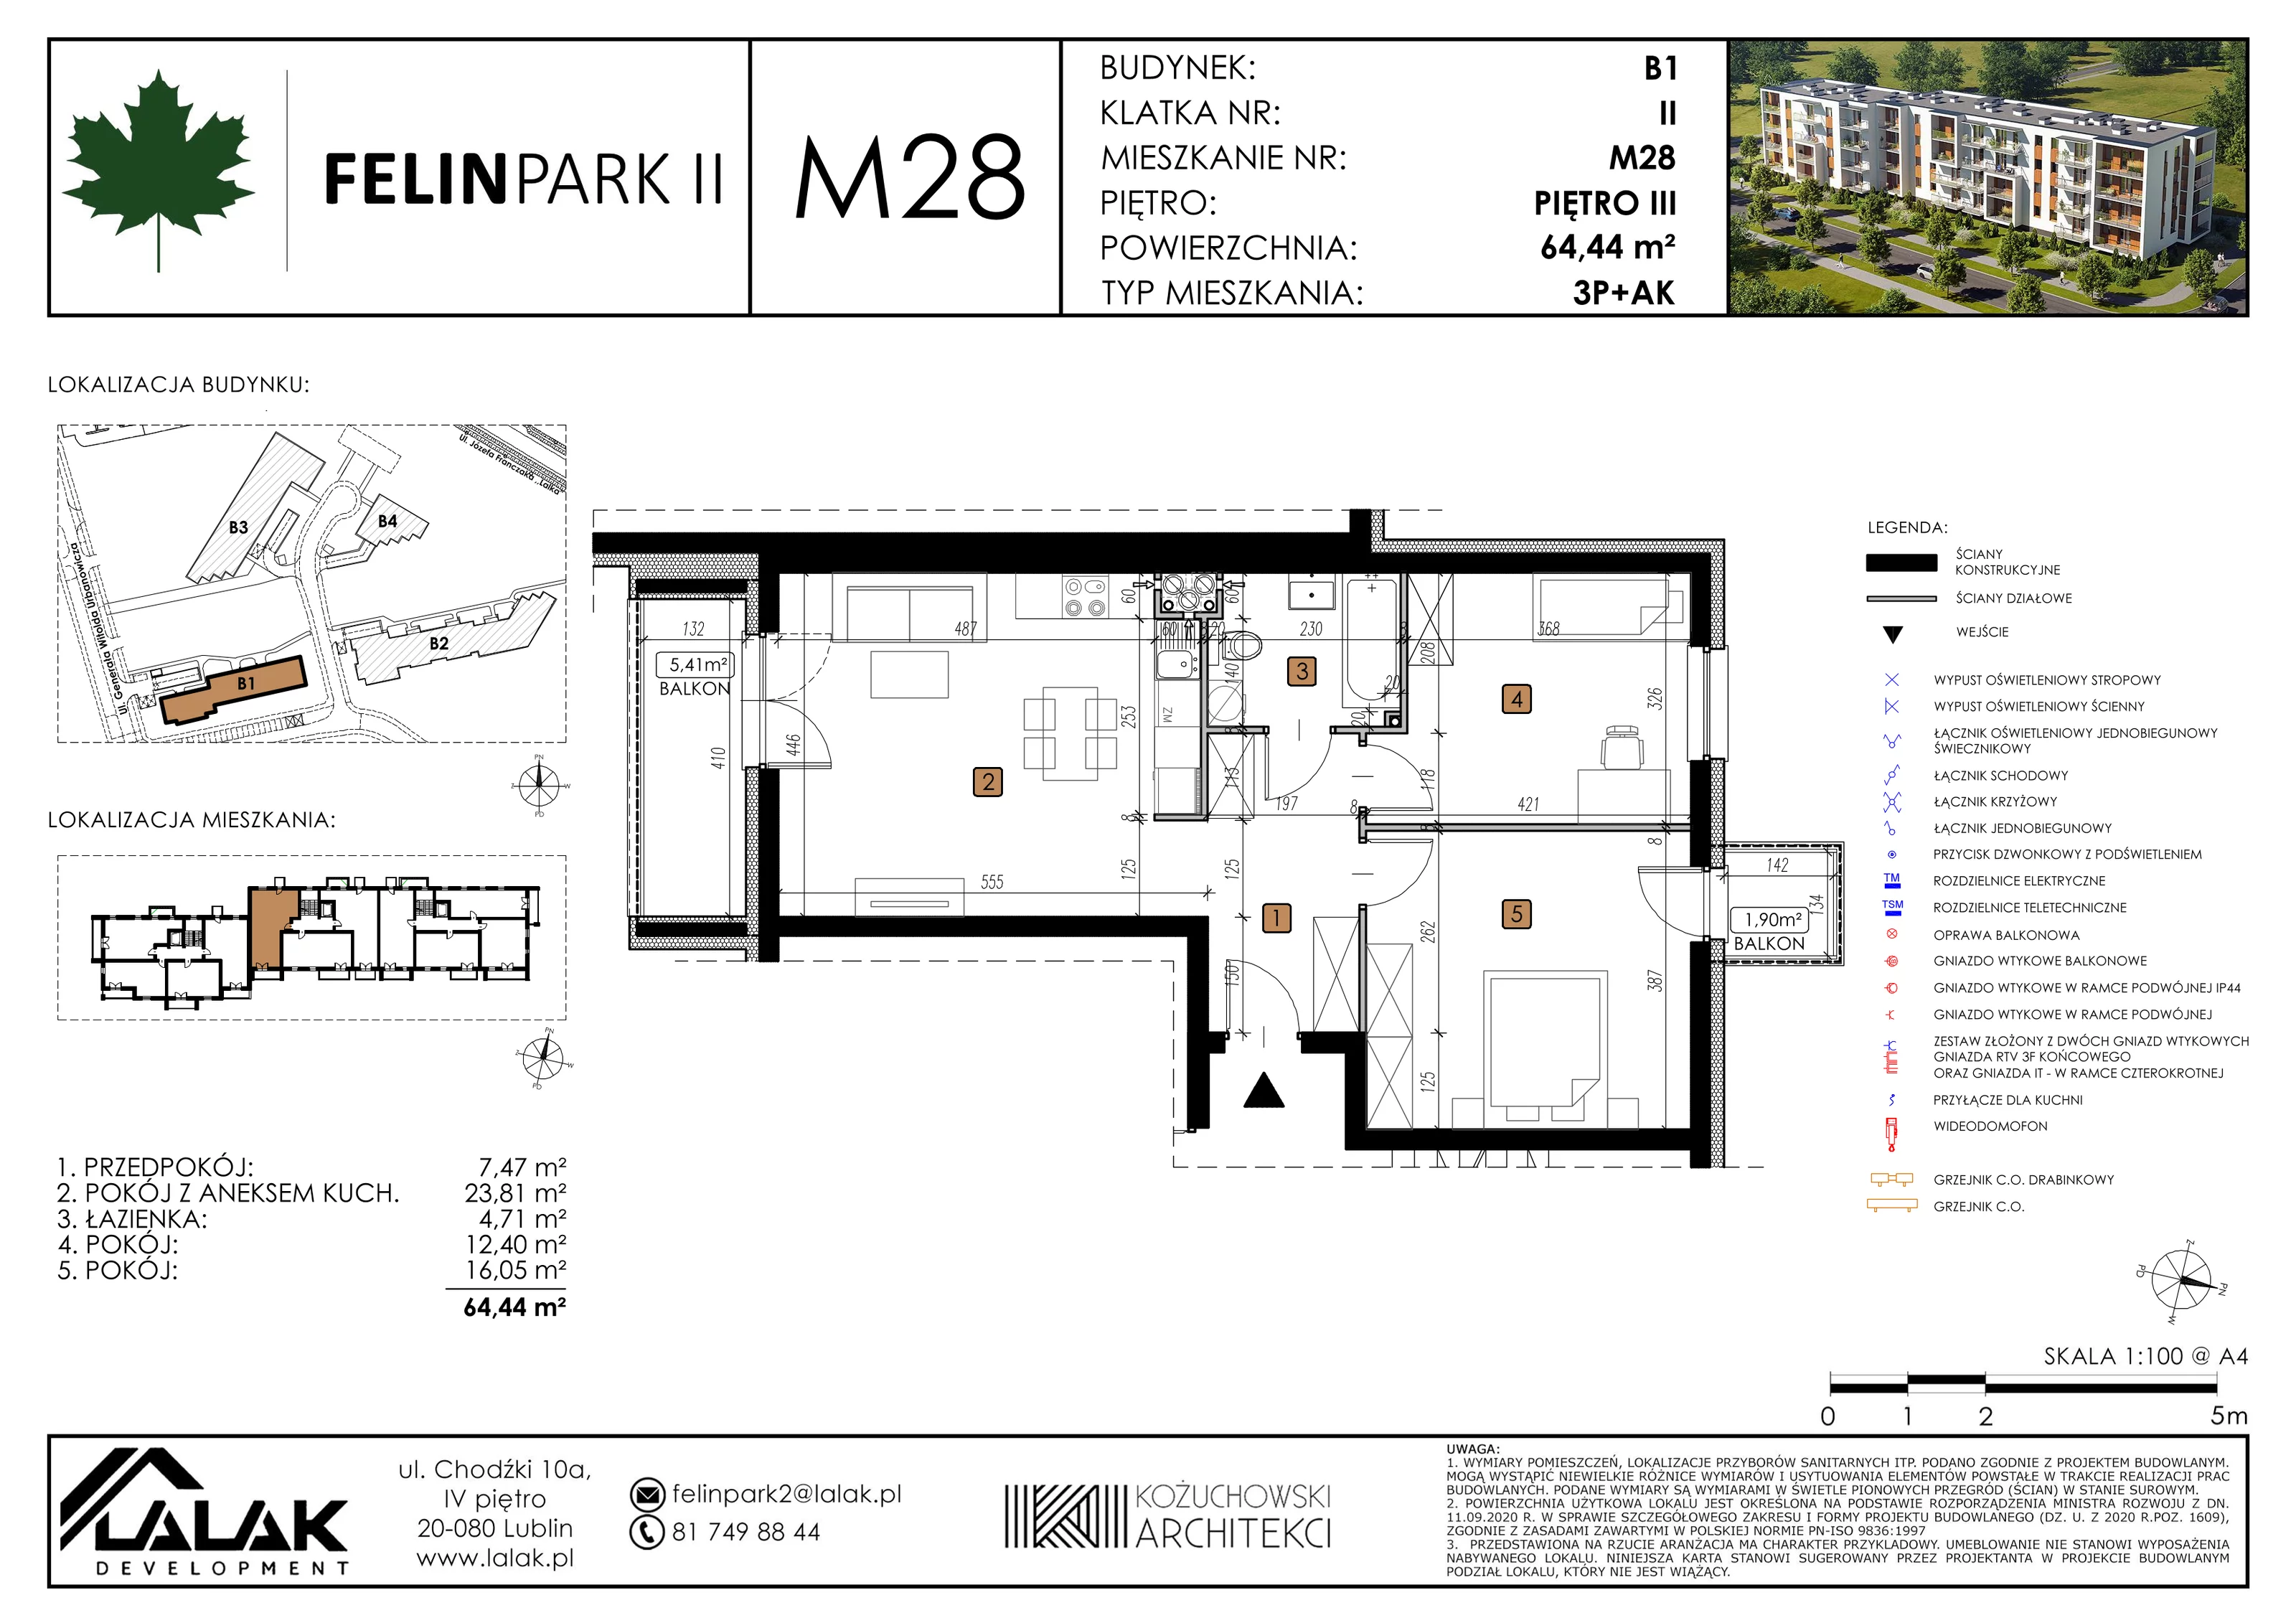 Mieszkanie 64,41 m², piętro 3, oferta nr B1_M28/I, Felin Park II, Lublin, Felin, ul. gen. Stanisława Skalskiego 8-10